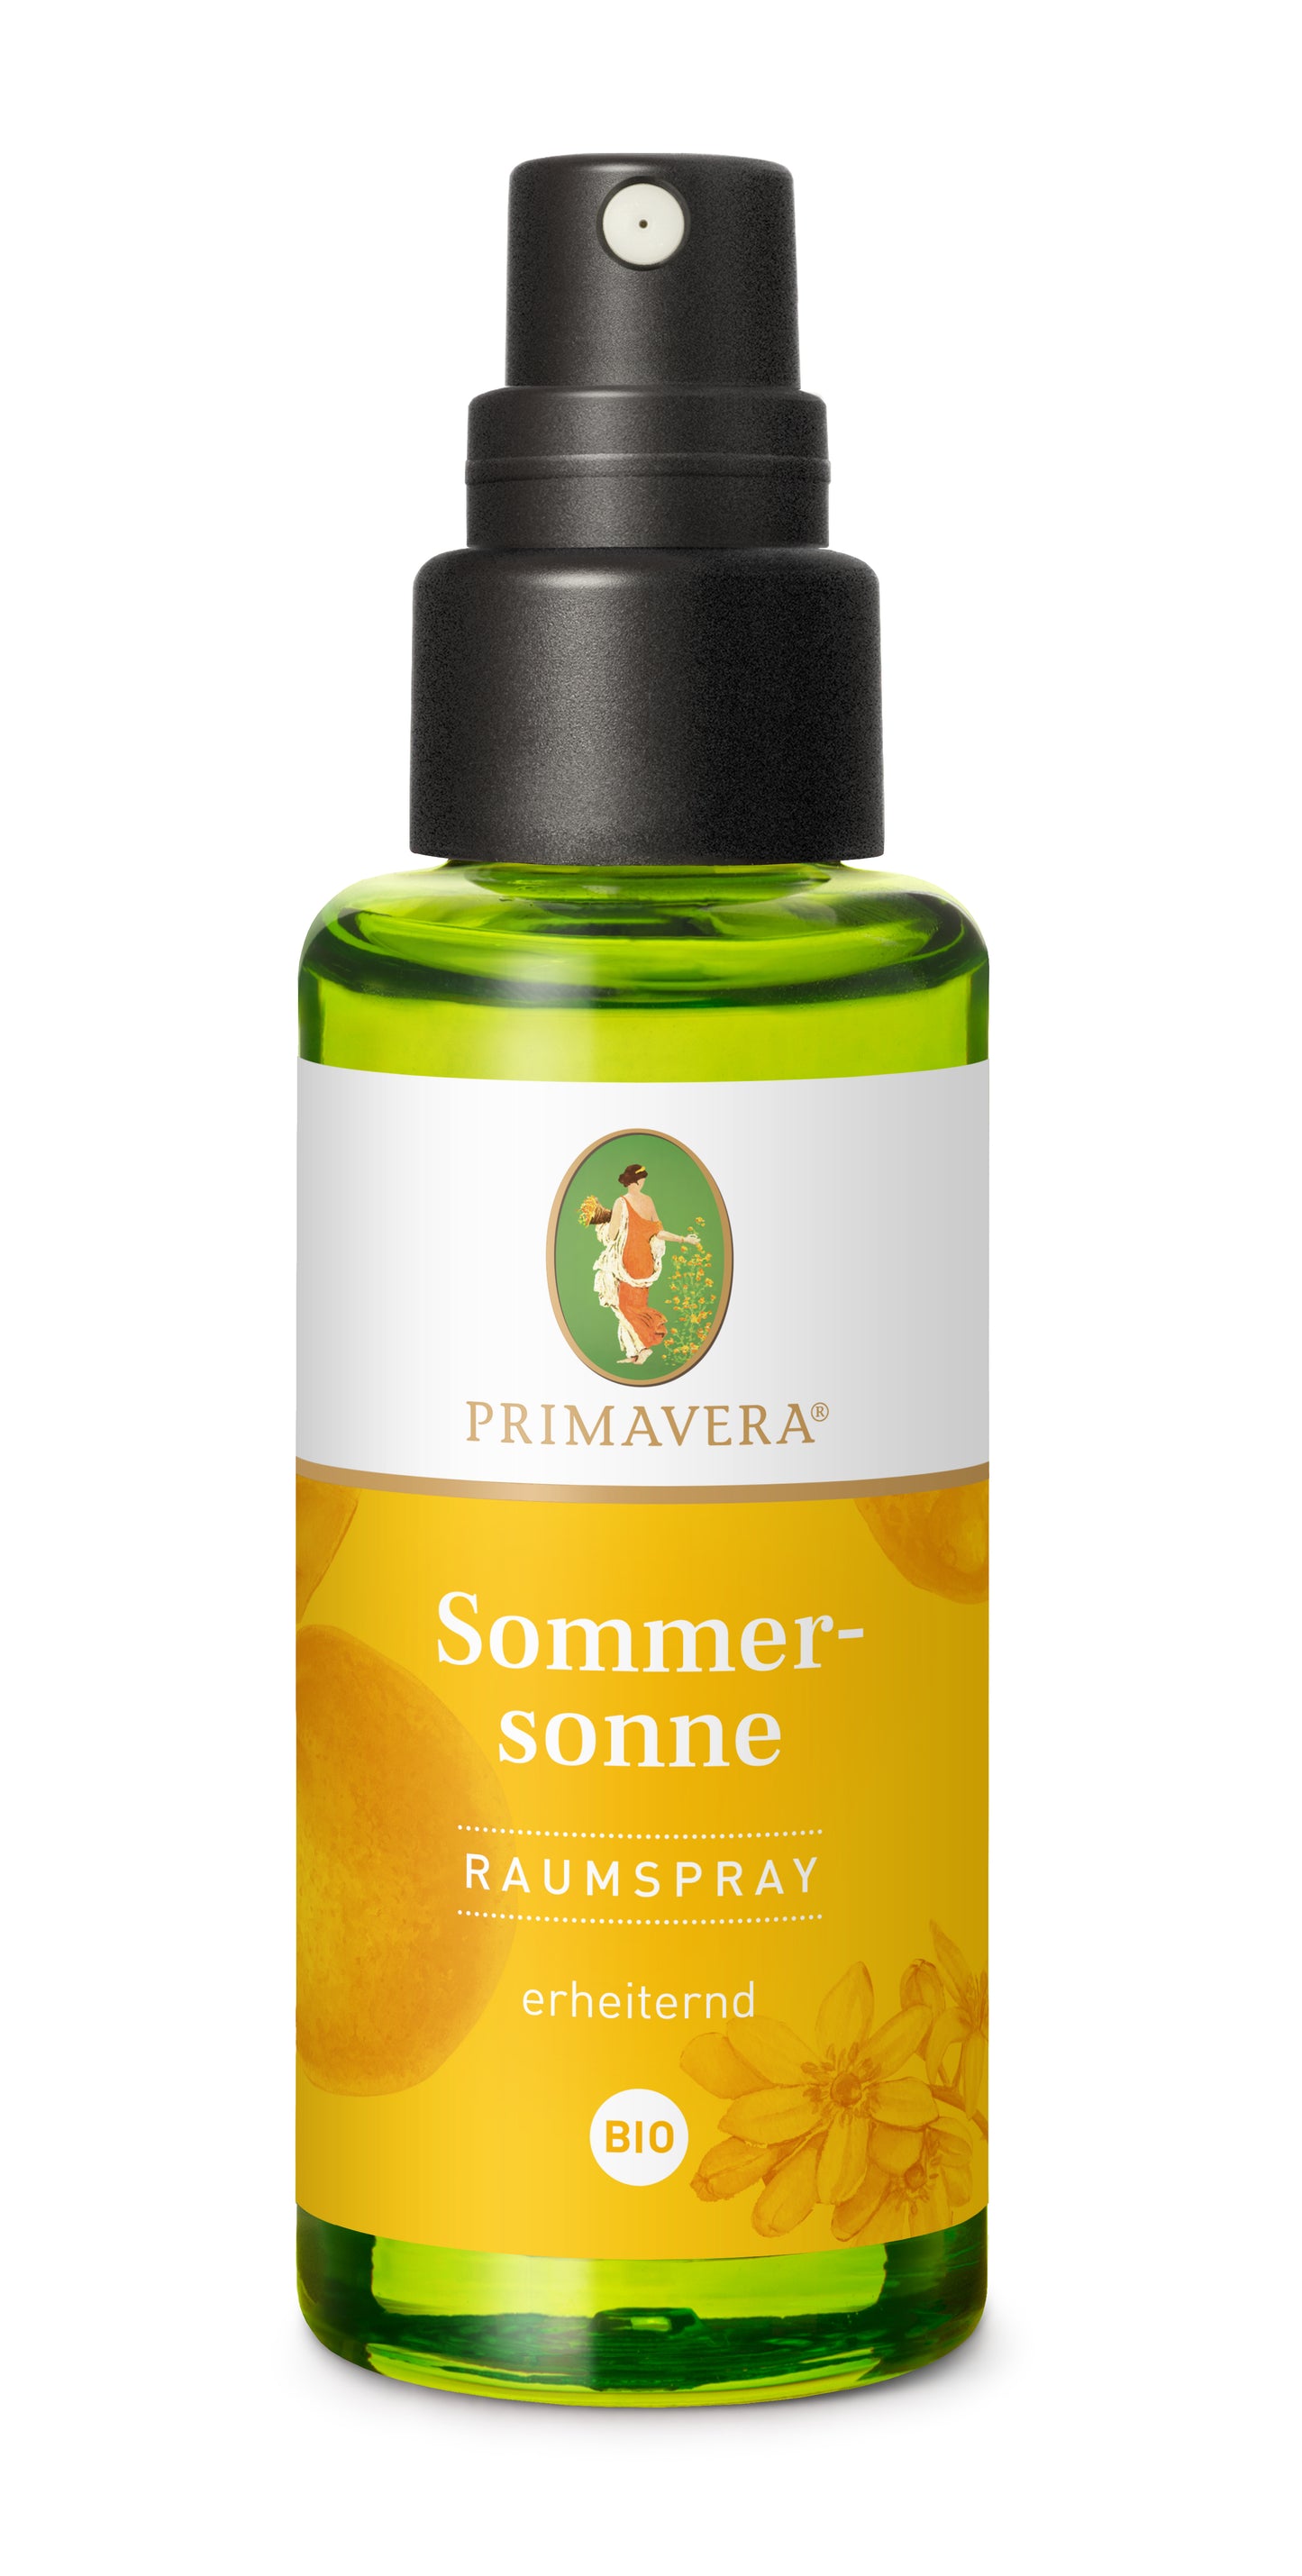 Primavera - Sommersonne Raumspray - 50 ml